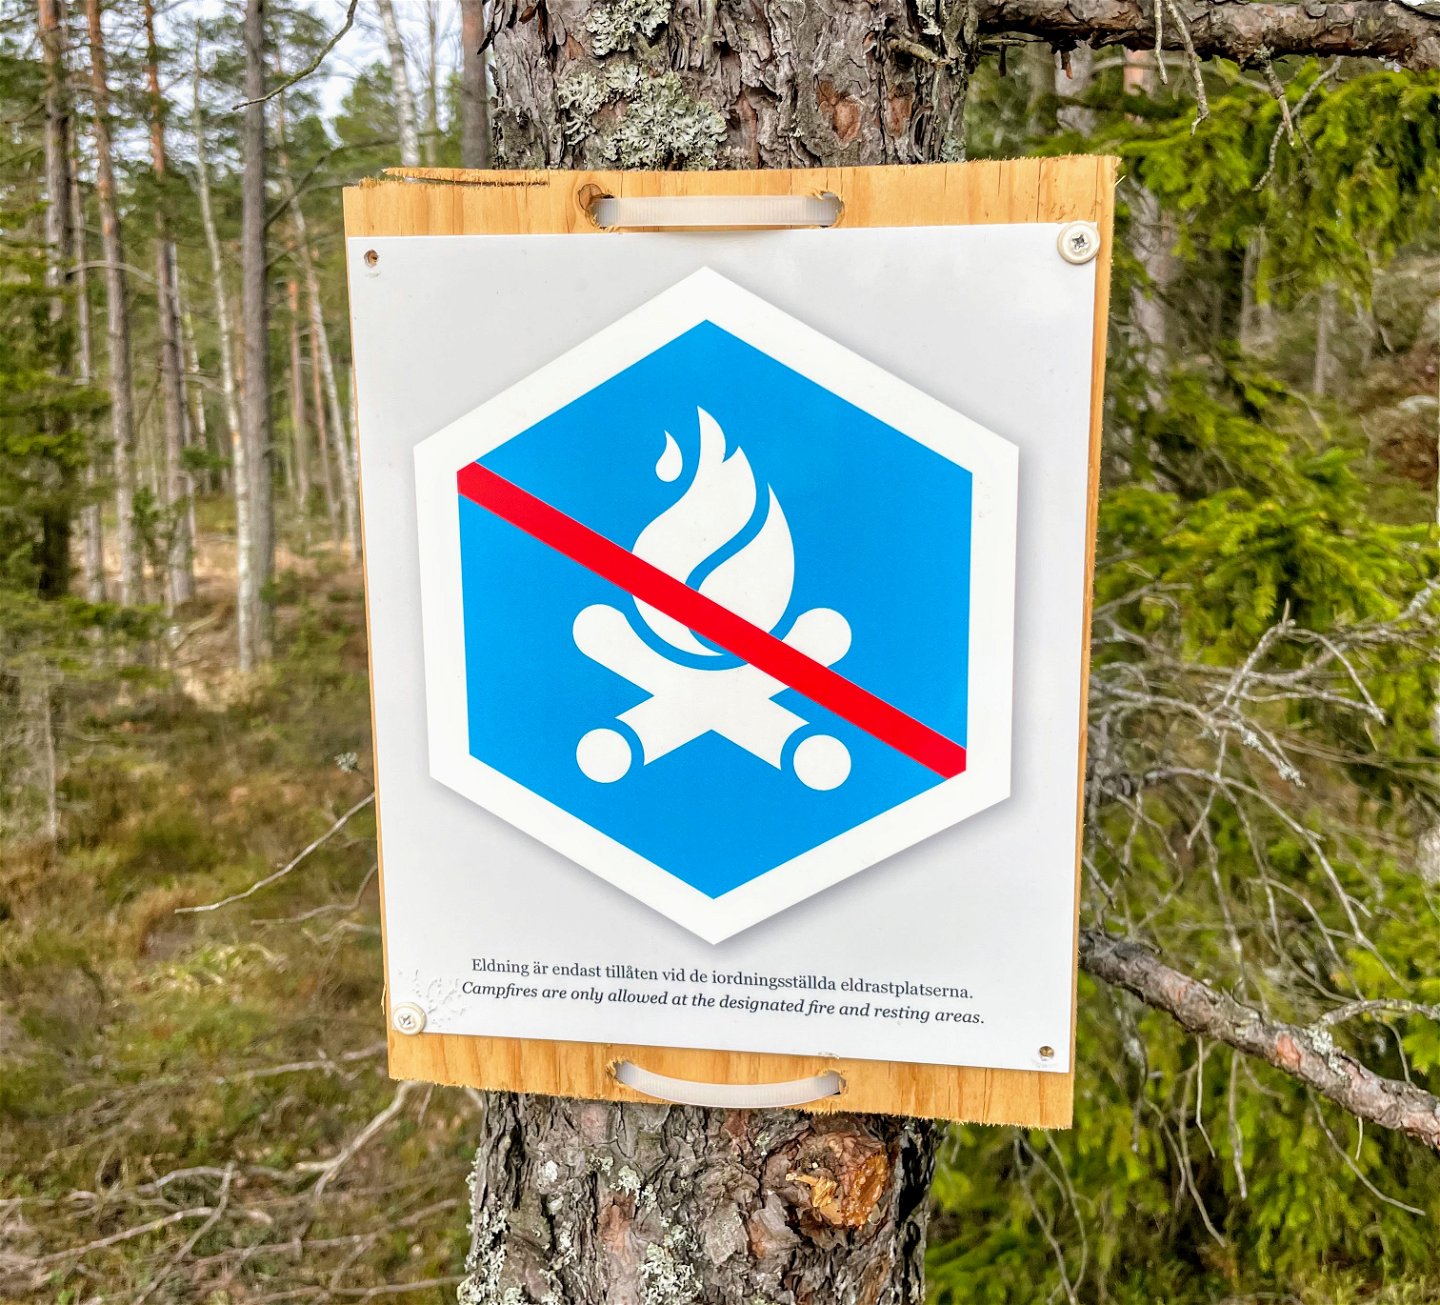 Alltid förbjudet att elda utanför de fasta eldrastplatserna i Tyresta.